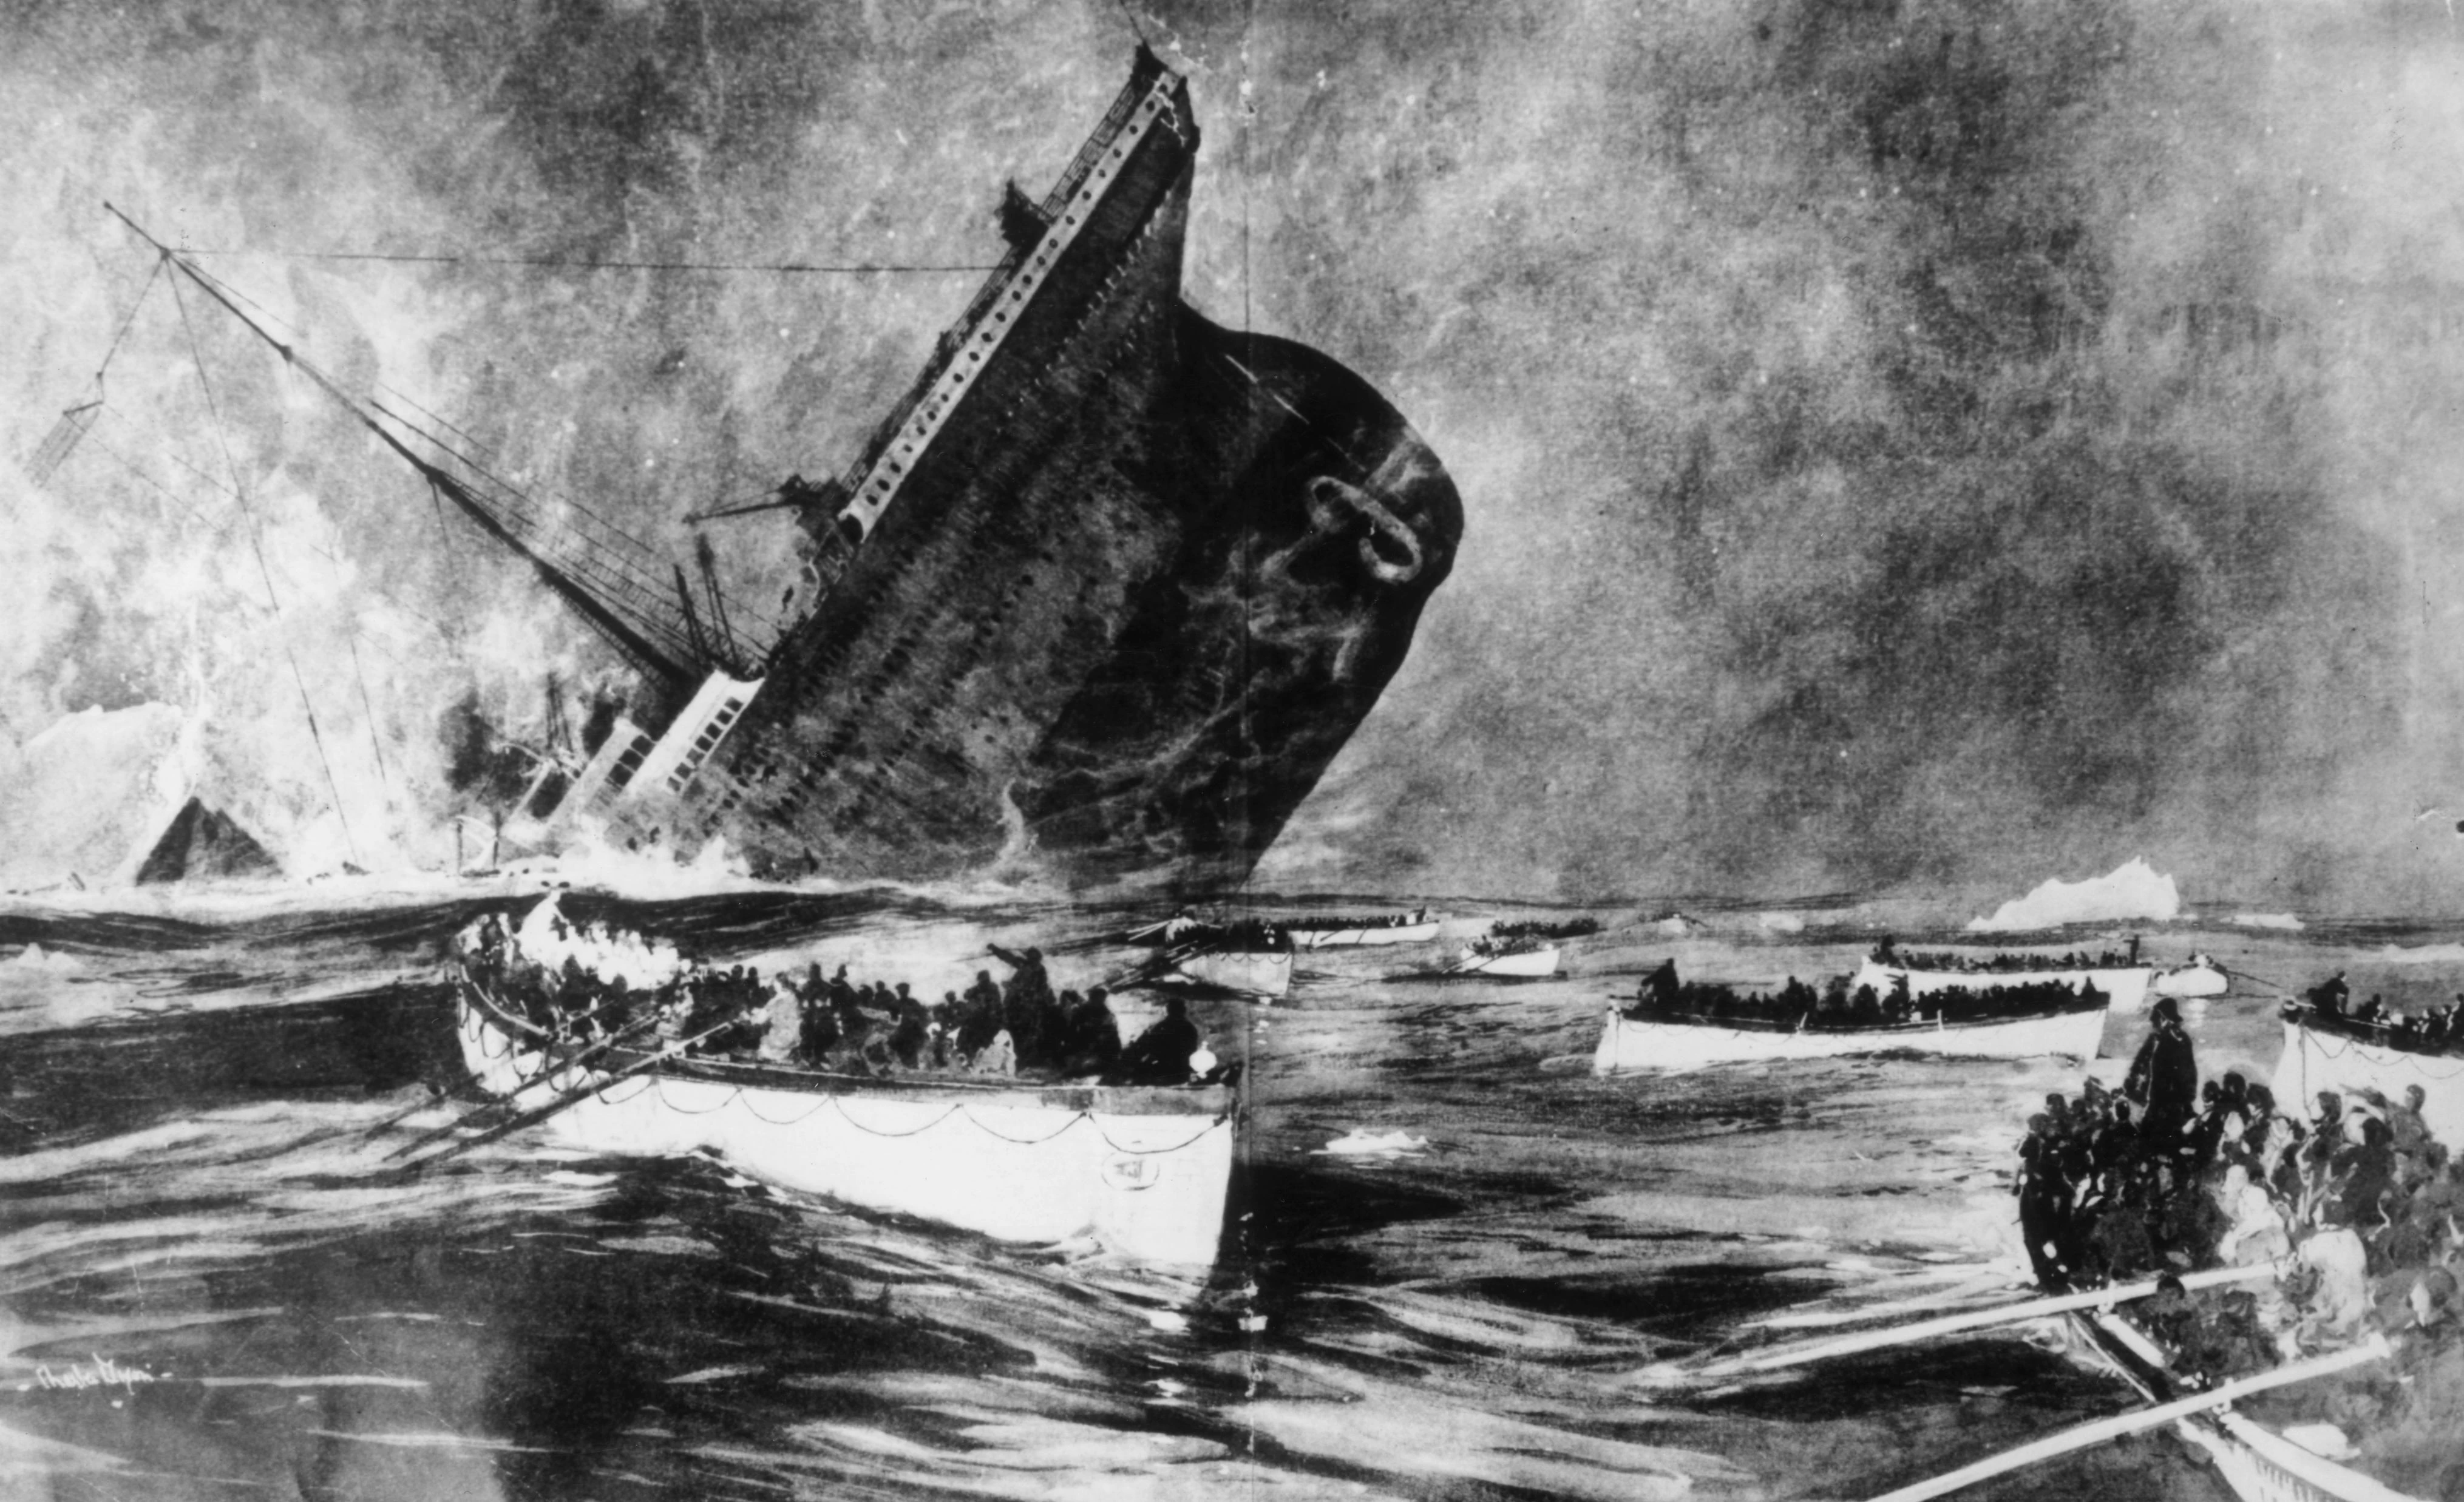 Выжившие наблюдают из спасательных шлюпок, как злополучный лайнер погружается под волны. Иллюстрация из газеты The Illustrated London News